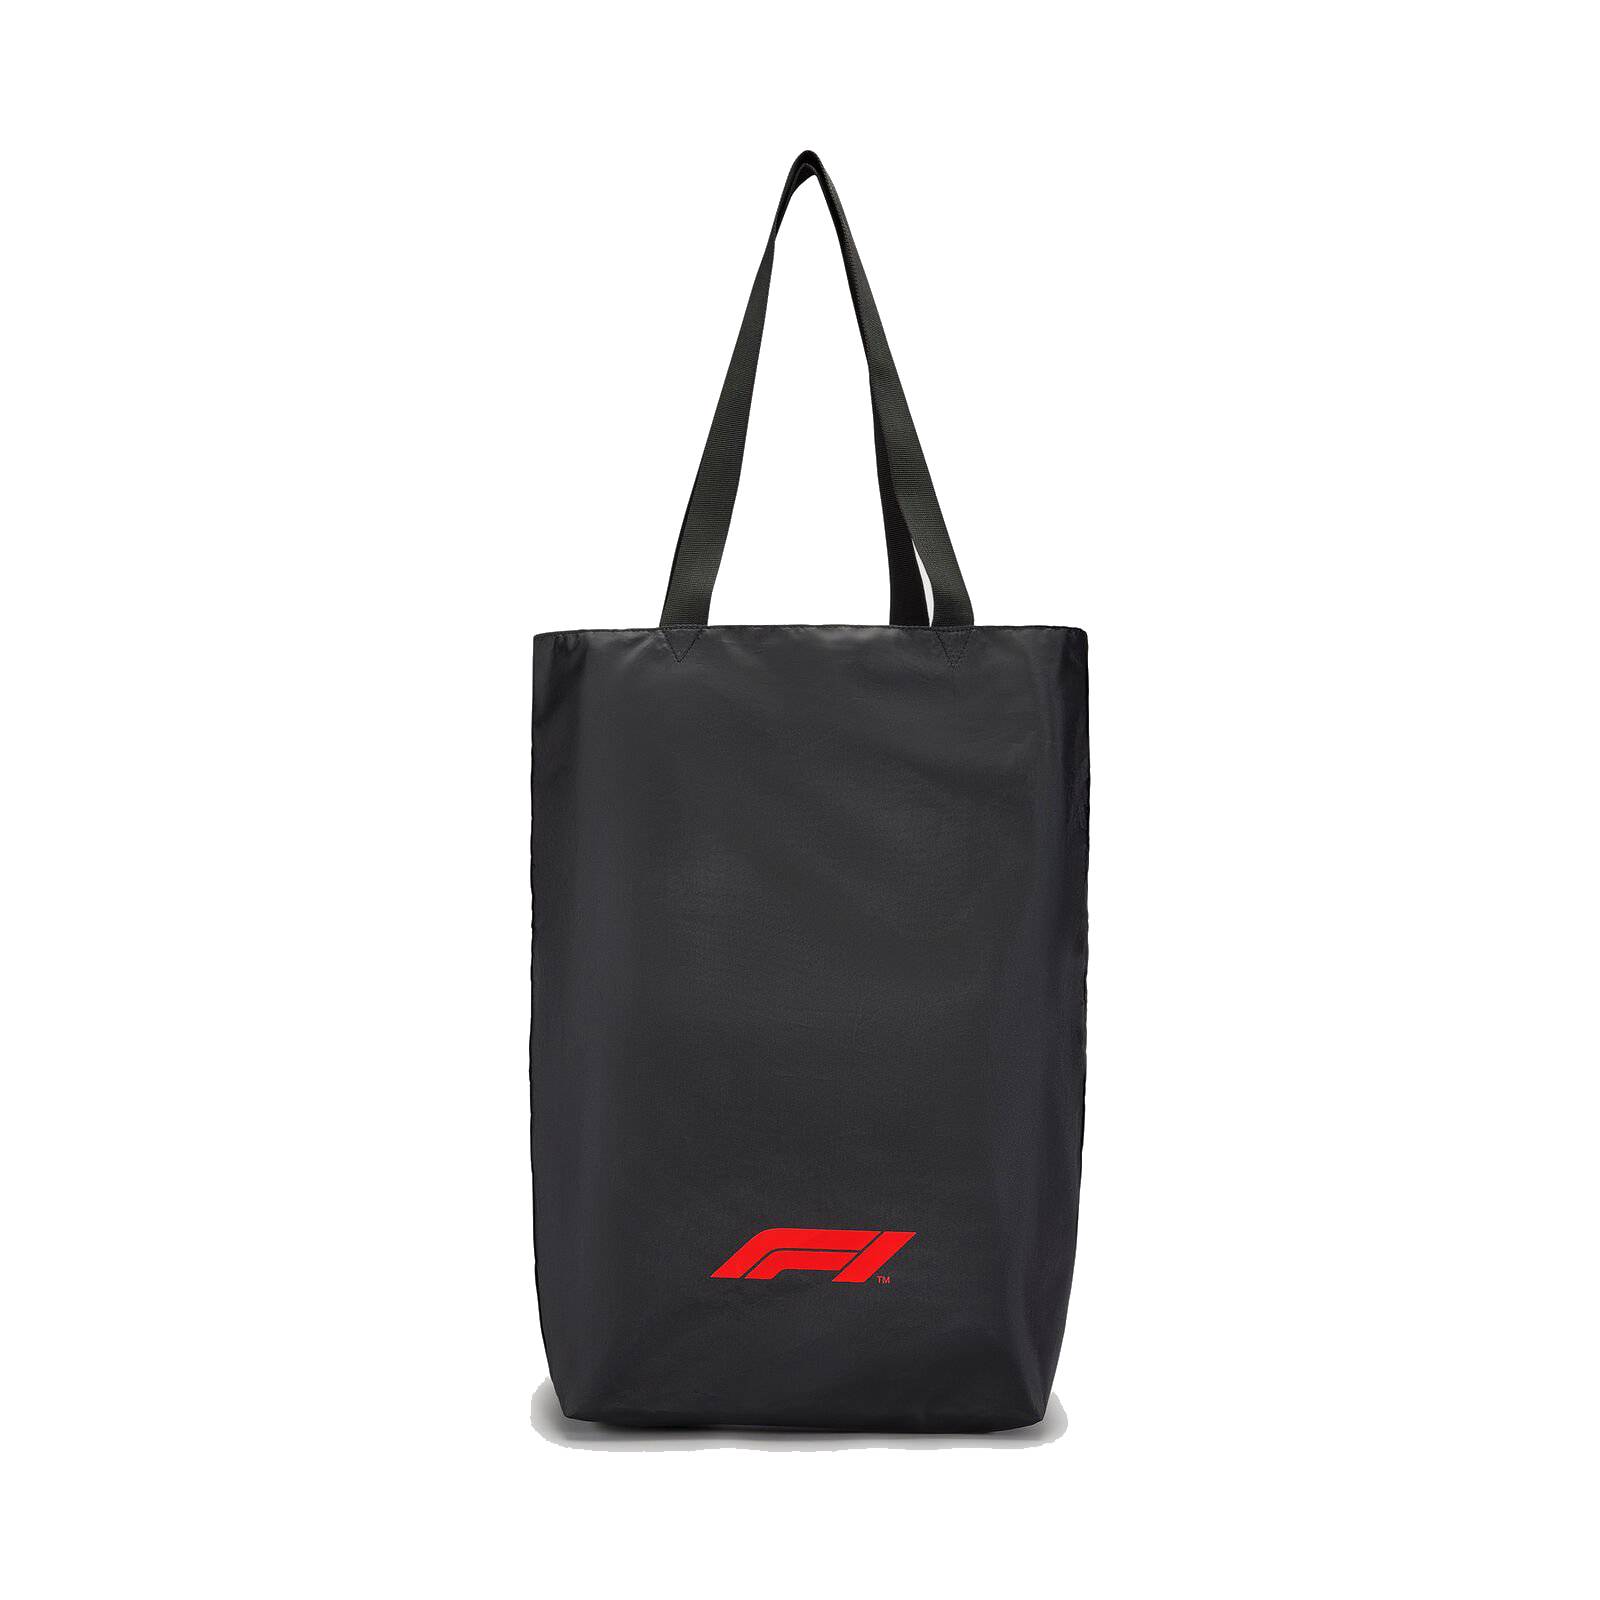 Formel 1 Collection Tasche - schwarz